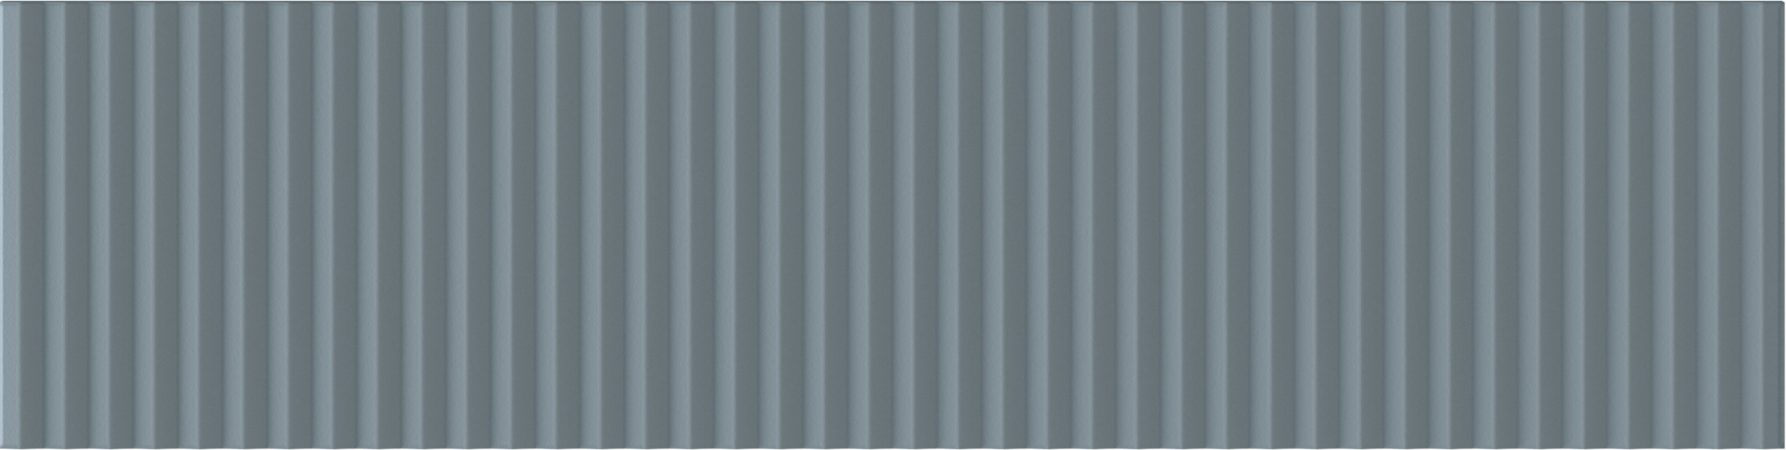 Керамическая плитка Wow Twin Peaks Low Sky 131559, цвет голубой, поверхность матовая 3d (объёмная), под кирпич, 75x300